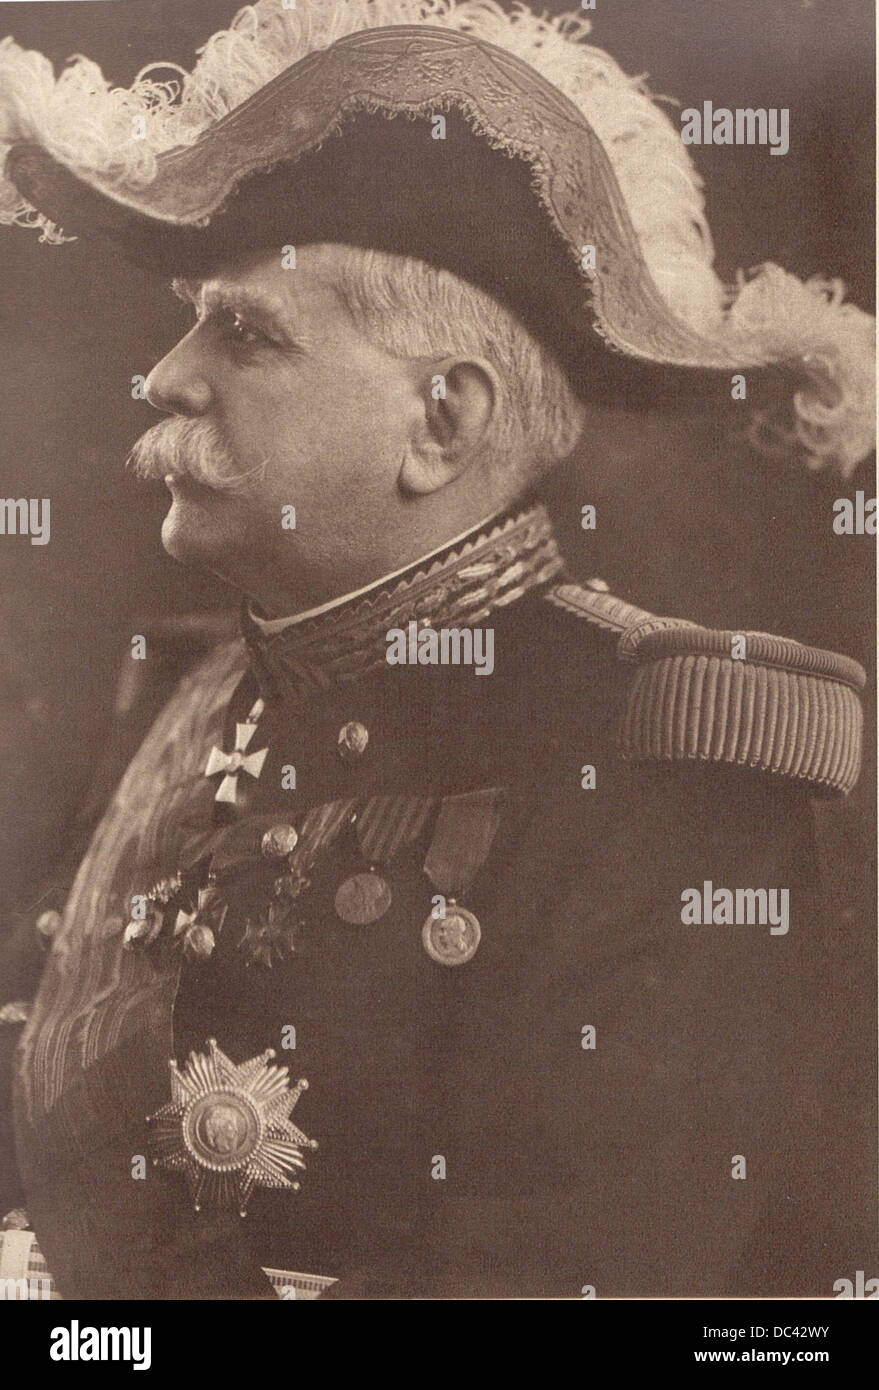 Joseph Joffre, Maresciallo di Francia, da R.Melcy, fotografo francese del primo quarto del XX secolo. Da l' 'Illustratio Foto Stock